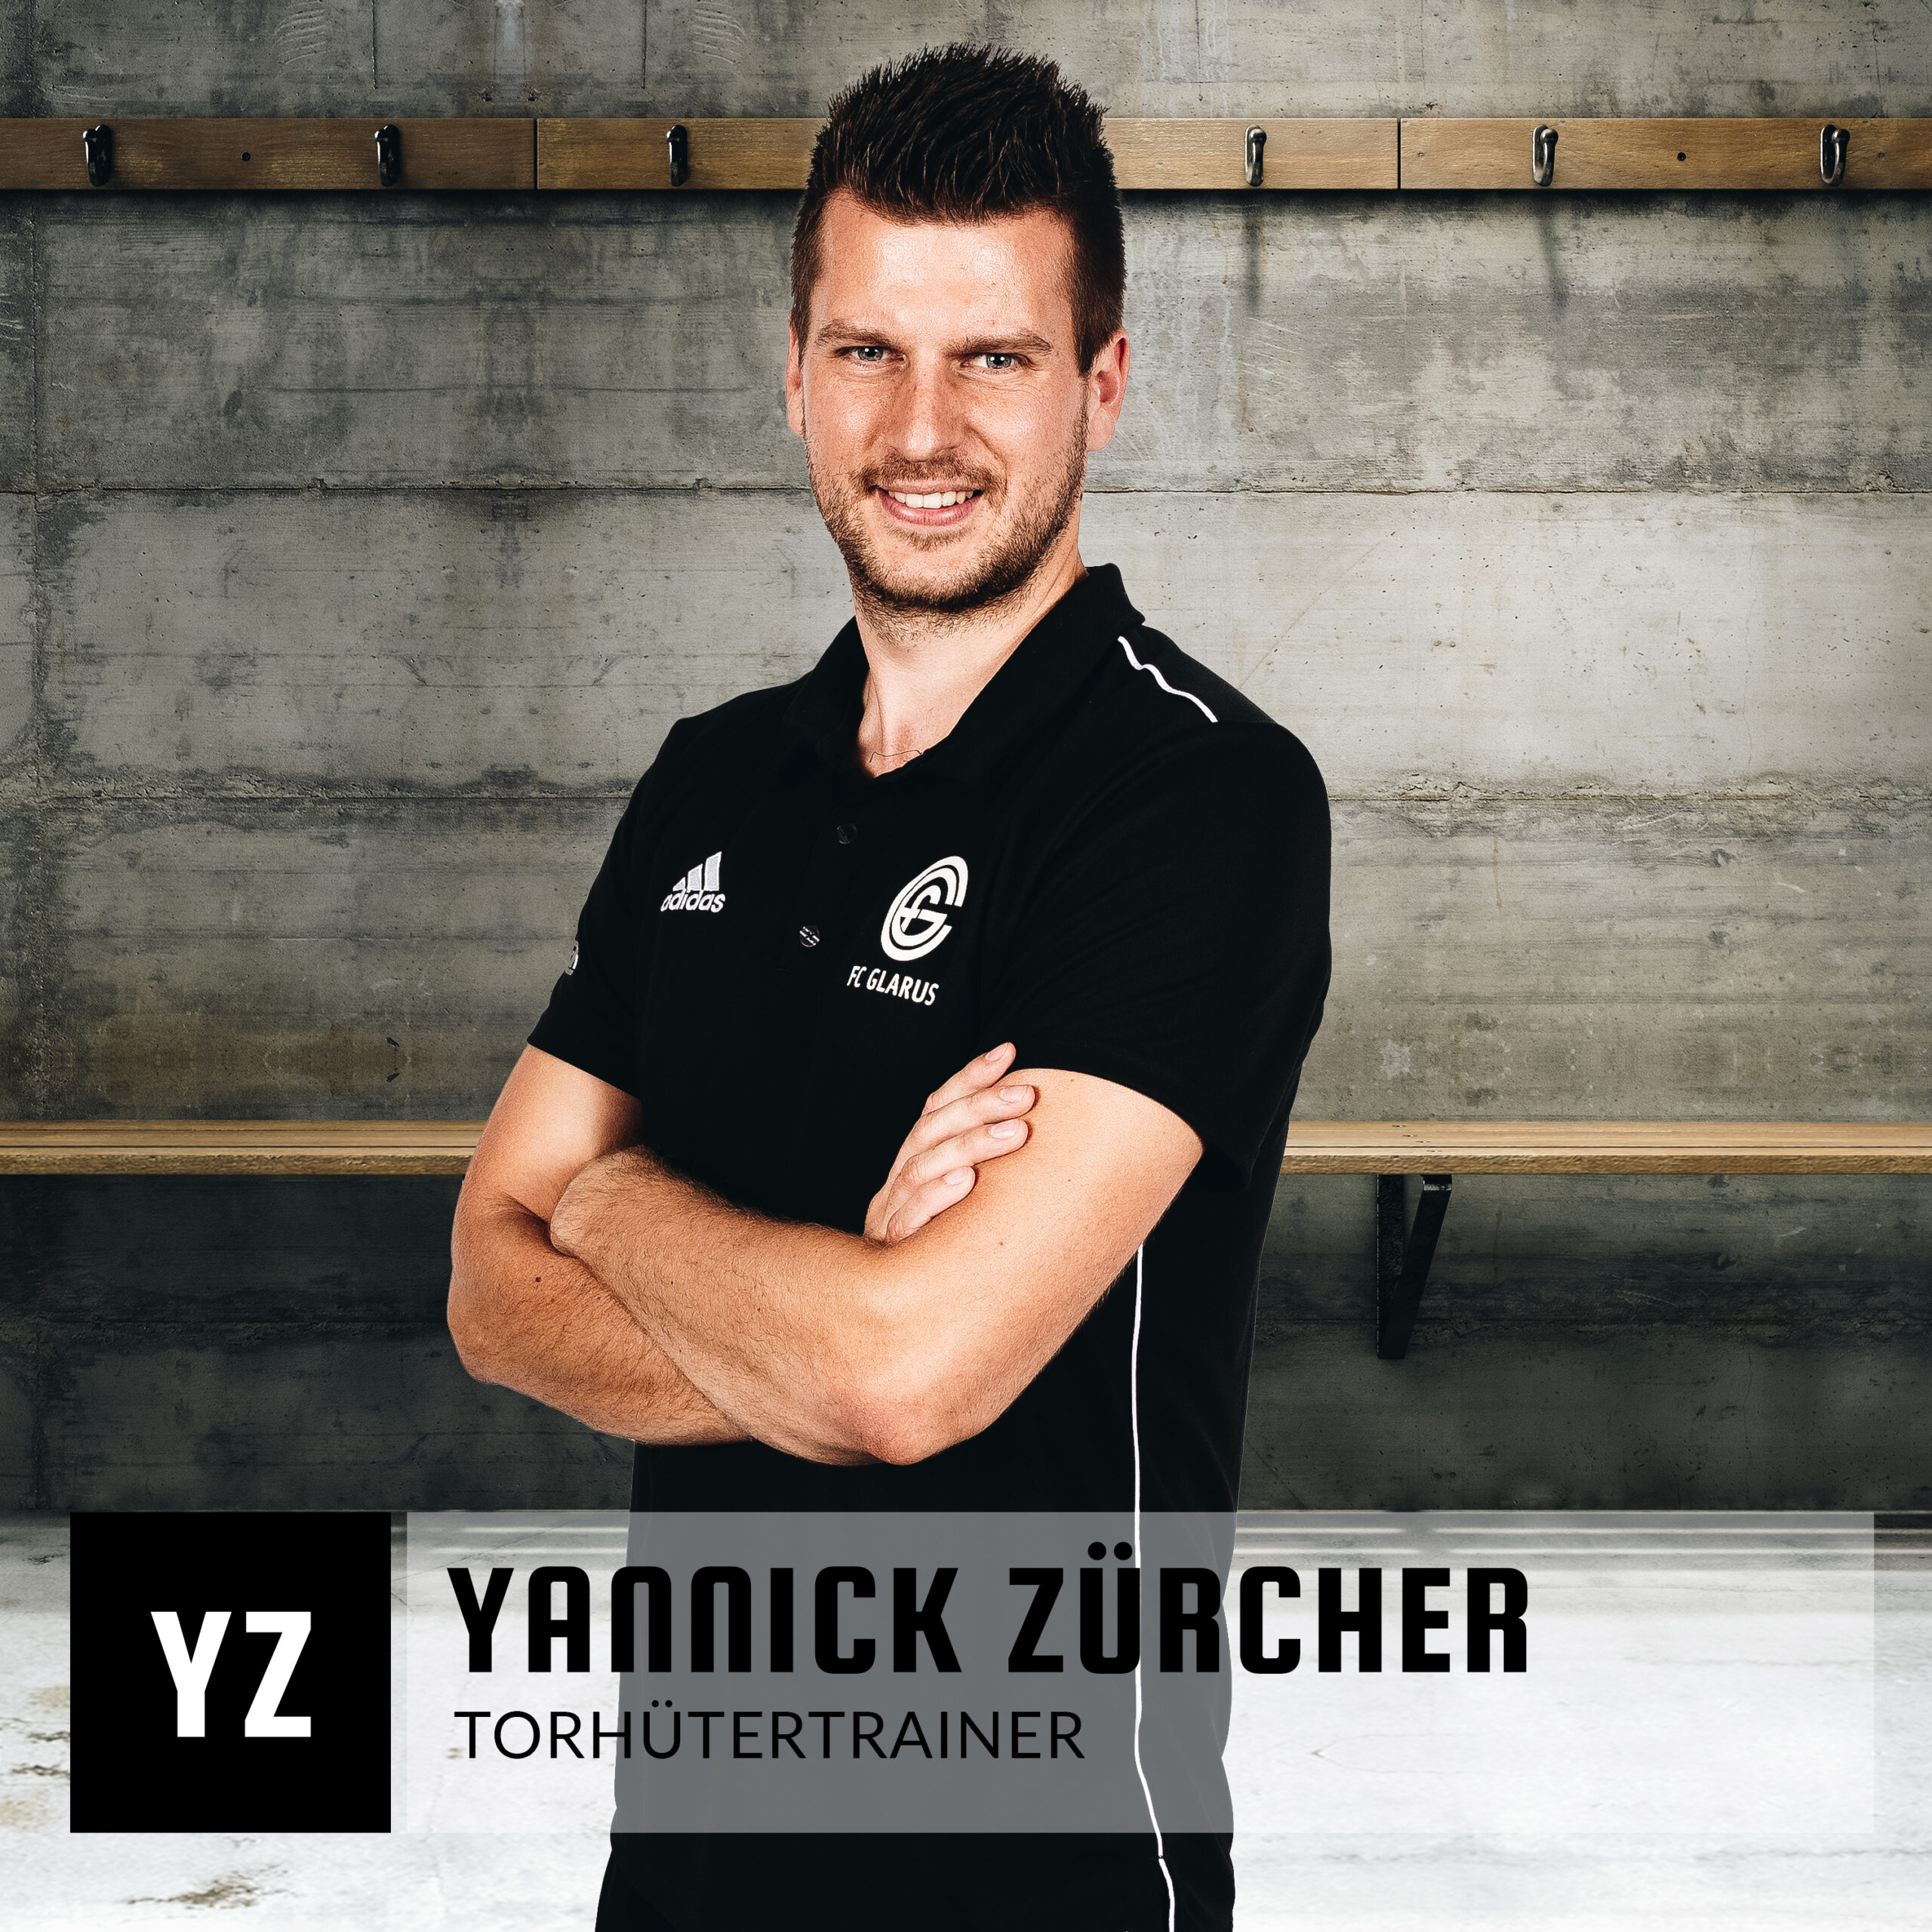 Yannick Zürcher